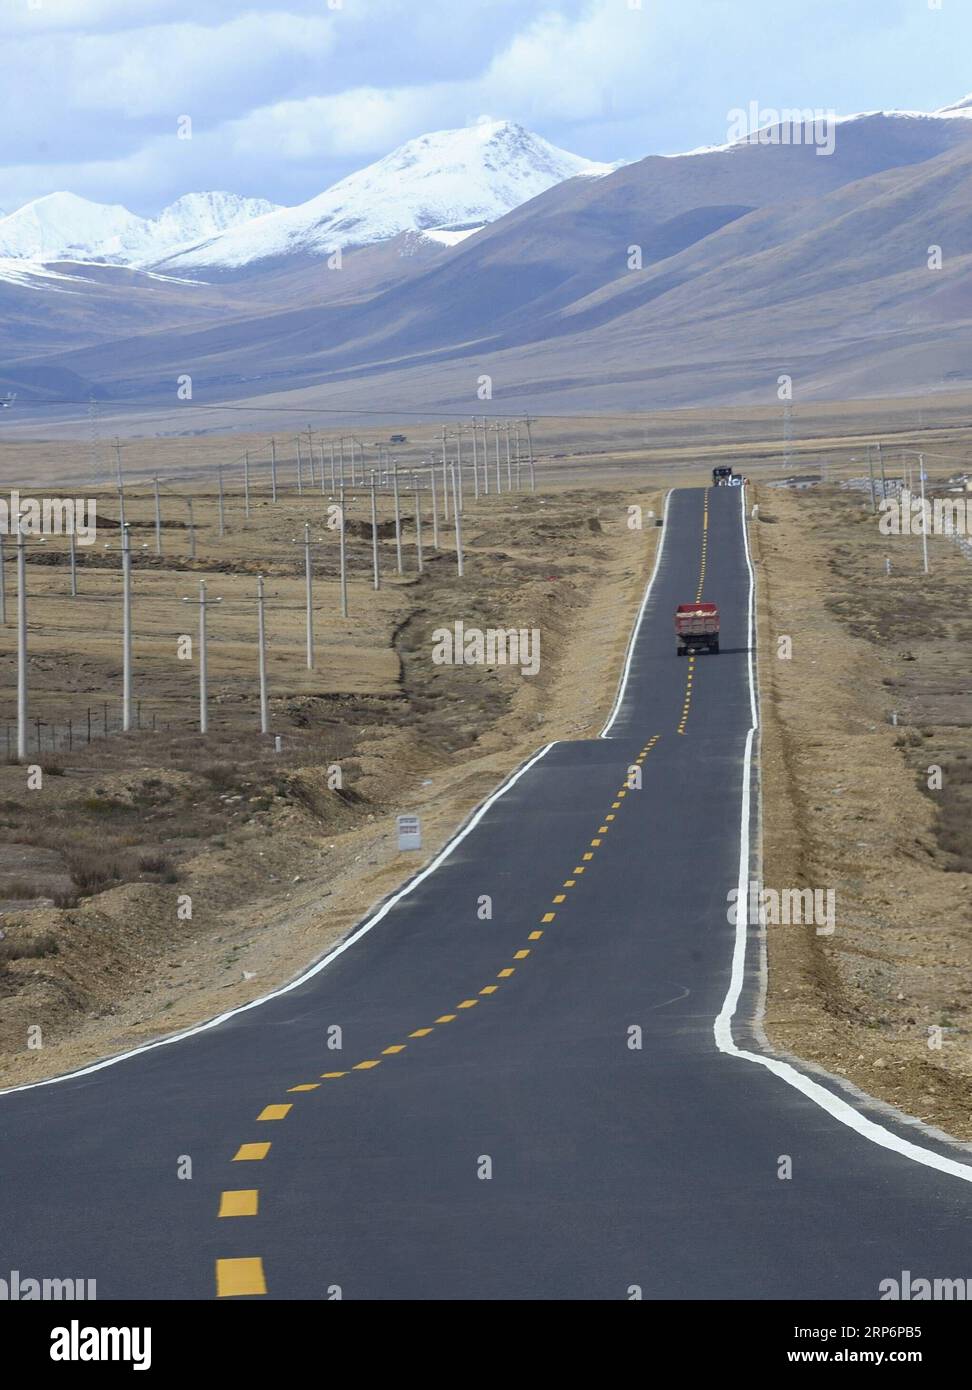 (190118) -- PEKING, 18. Januar 2019 -- Fahrzeuge fahren auf der Bangchang Road, die Bangda Township mit Changdu in der südwestchinesischen Autonomen Region Tibet verbindet, 18. Oktober 2010. Tibet hat geplant, bis Ende 2019 4.500 Kilometer ländlicher Straßen zu bauen und auszubauen, um alle seine Townships und Dörfer zu verbinden, sagten die lokalen Behörden am 17. Januar 2019. Laut dem Verkehrsministerium der Region wird dieser Schritt voraussichtlich zur laufenden Armutsbekämpfungskampagne beitragen, insbesondere in Tibets einem Township und 12 Dörfern, die noch keinen Zugang zu Straßen haben. Tibet investierte 37,29 Milliarden Yuan (etwa 5,5 Stockfoto